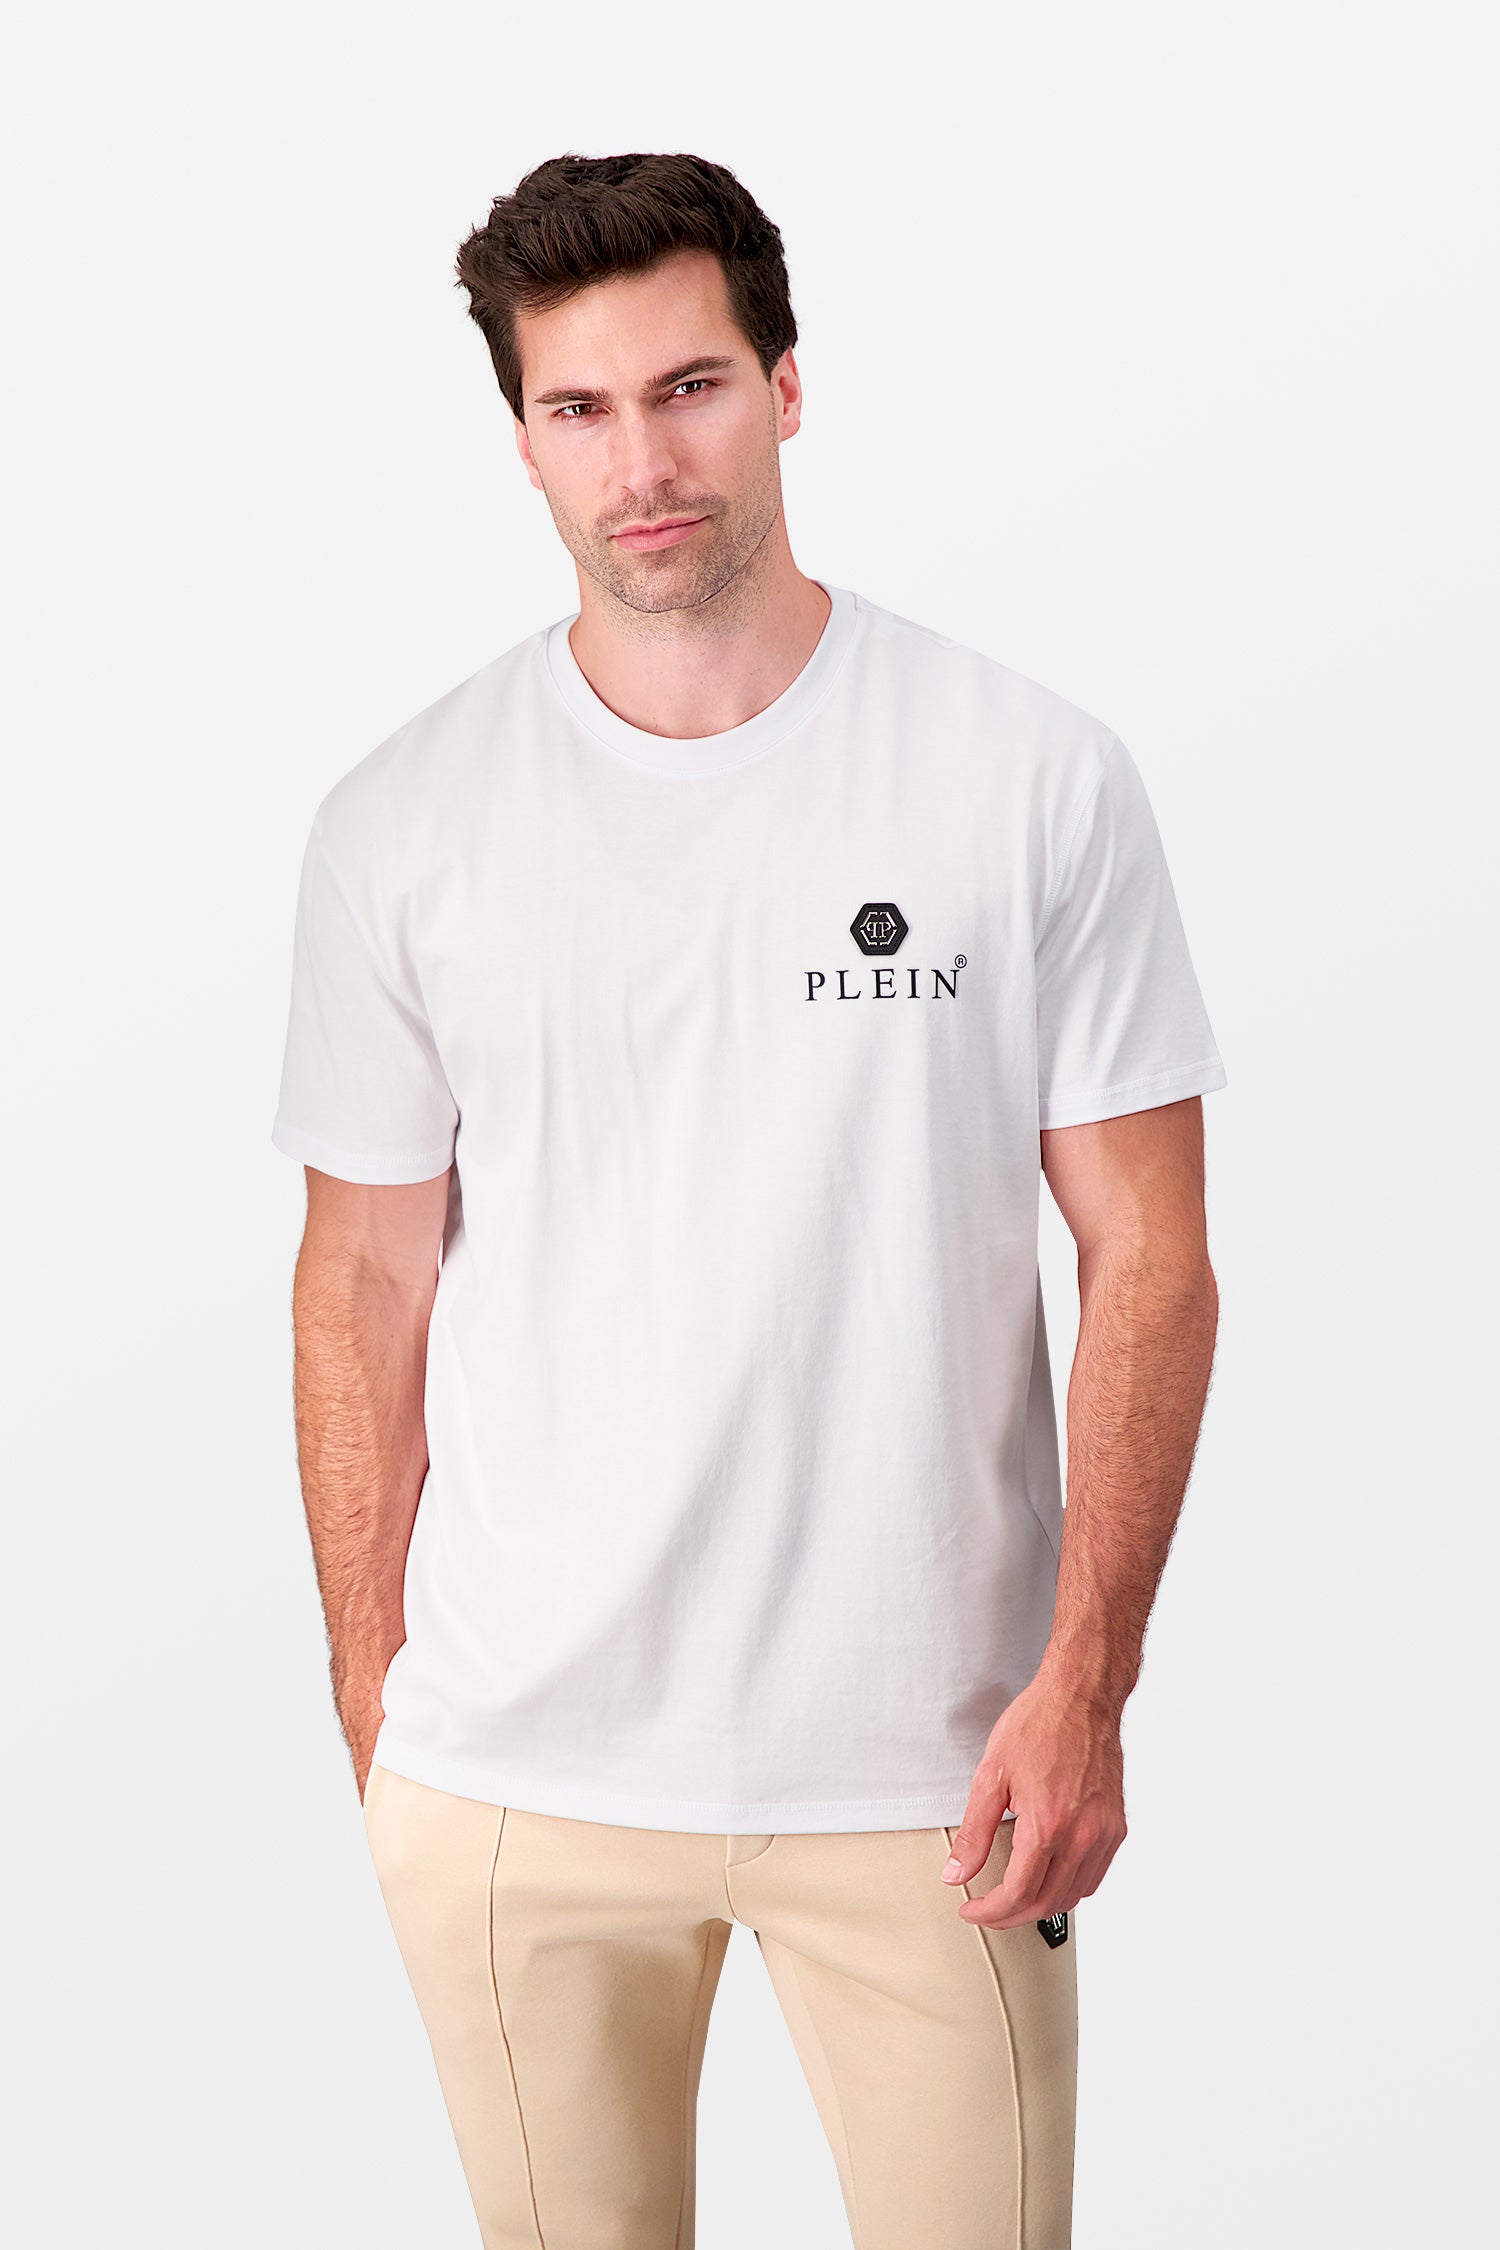 Philipp Plein White Iconic Plein T-Shirt